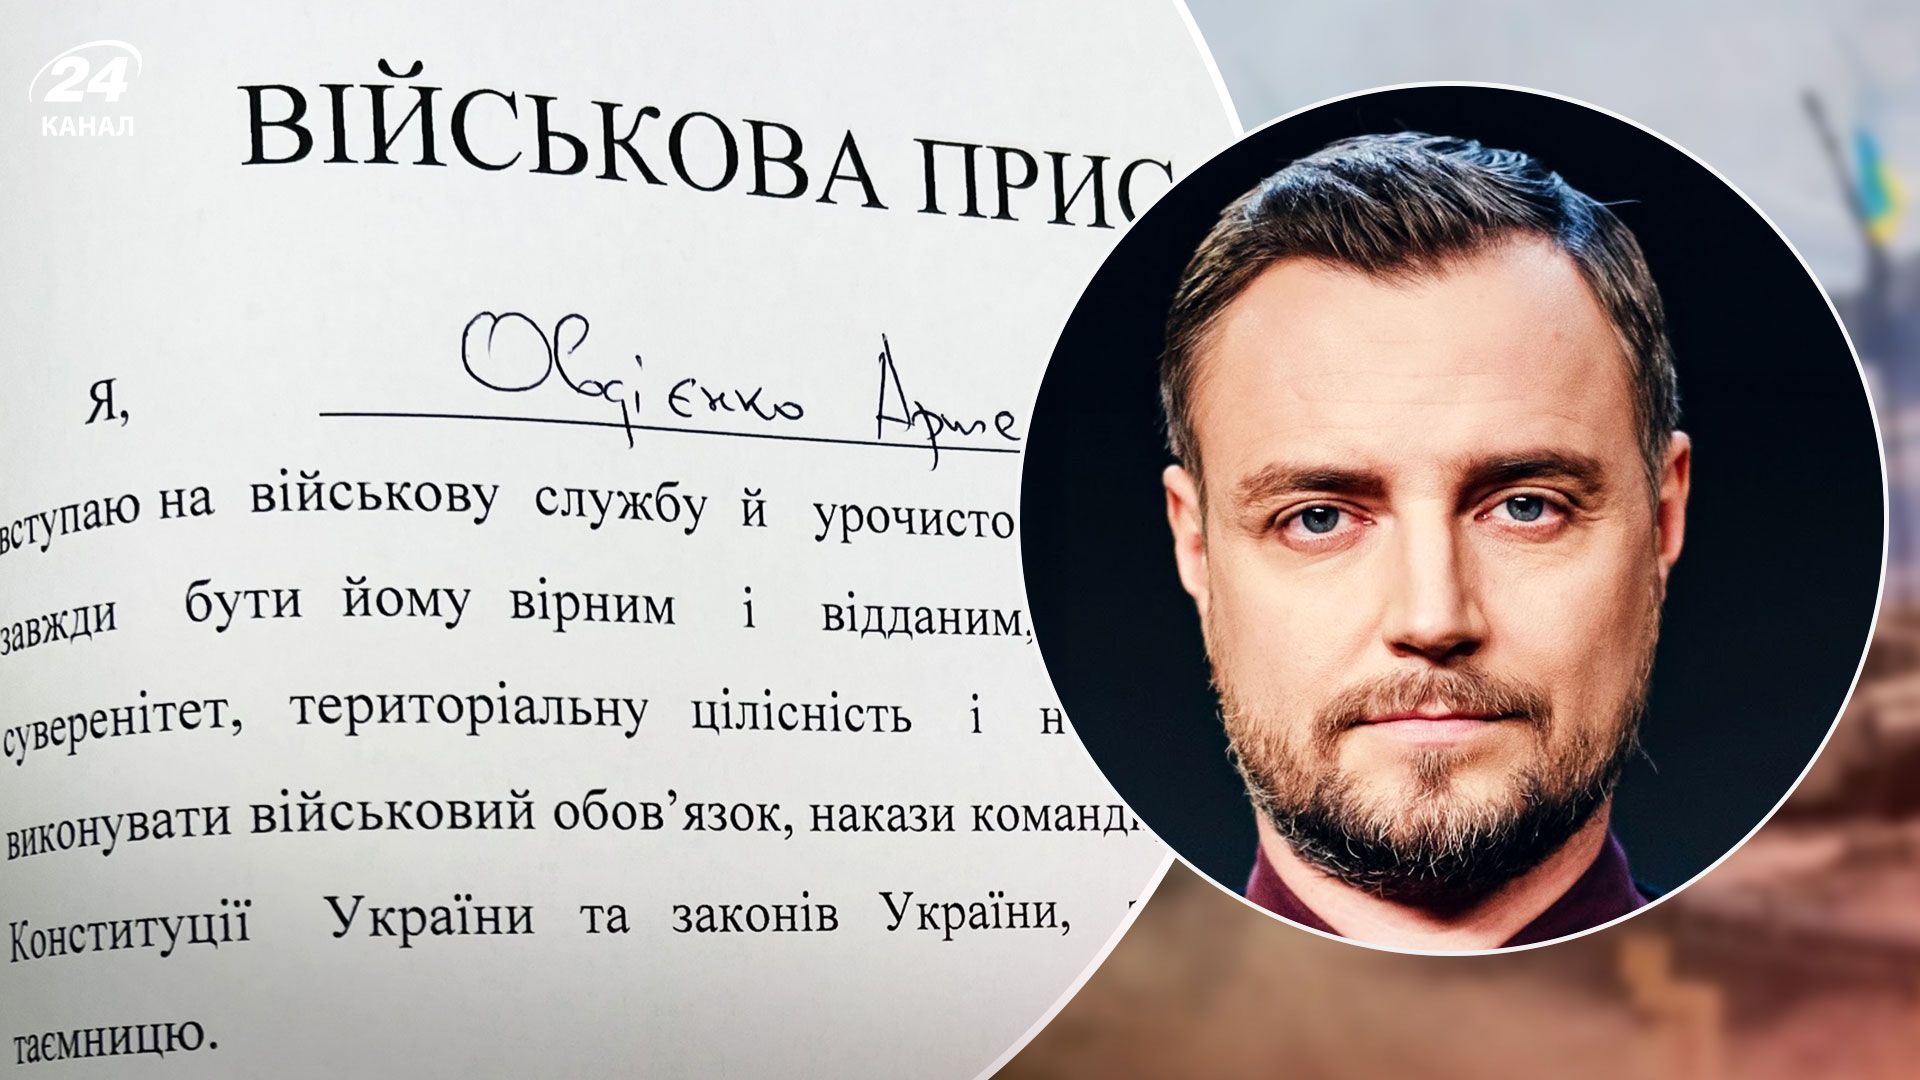 "Чувствую себя гордым": ведущий 24 Канала Артем Овдиенко принял присягу на верность Украине - 24 Канал